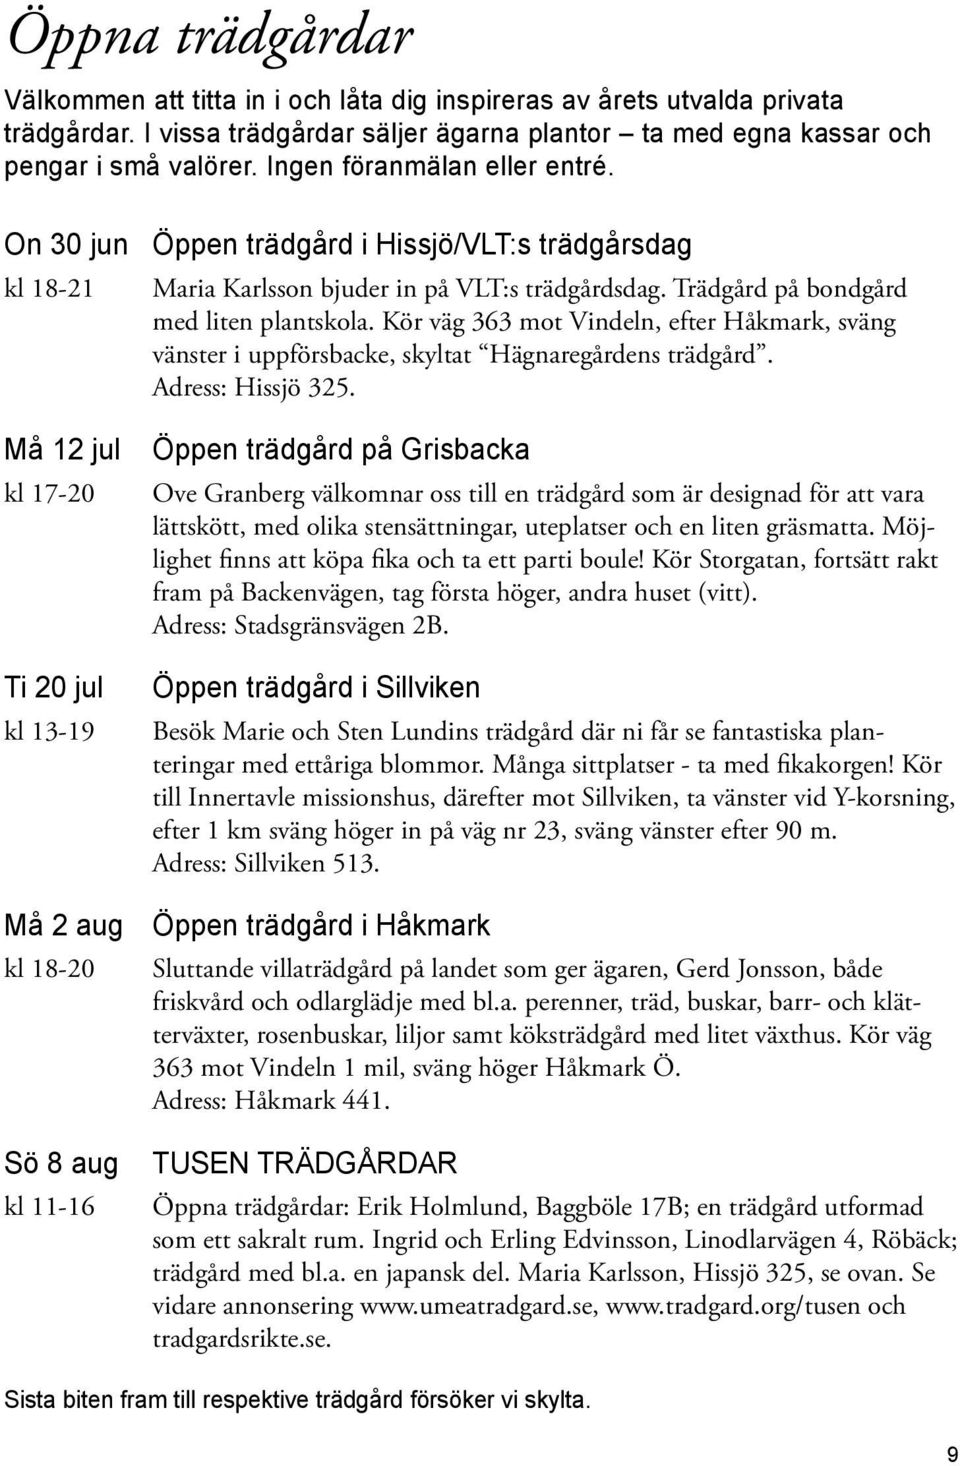 On 30 jun kl 18-21 Må 12 jul kl 17-20 Ti 20 jul kl 13-19 Må 2 aug kl 18-20 Sö 8 aug kl 11-16 Öppen trädgård i Hissjö/VLT:s trädgårsdag Maria Karlsson bjuder in på VLT:s trädgårdsdag.